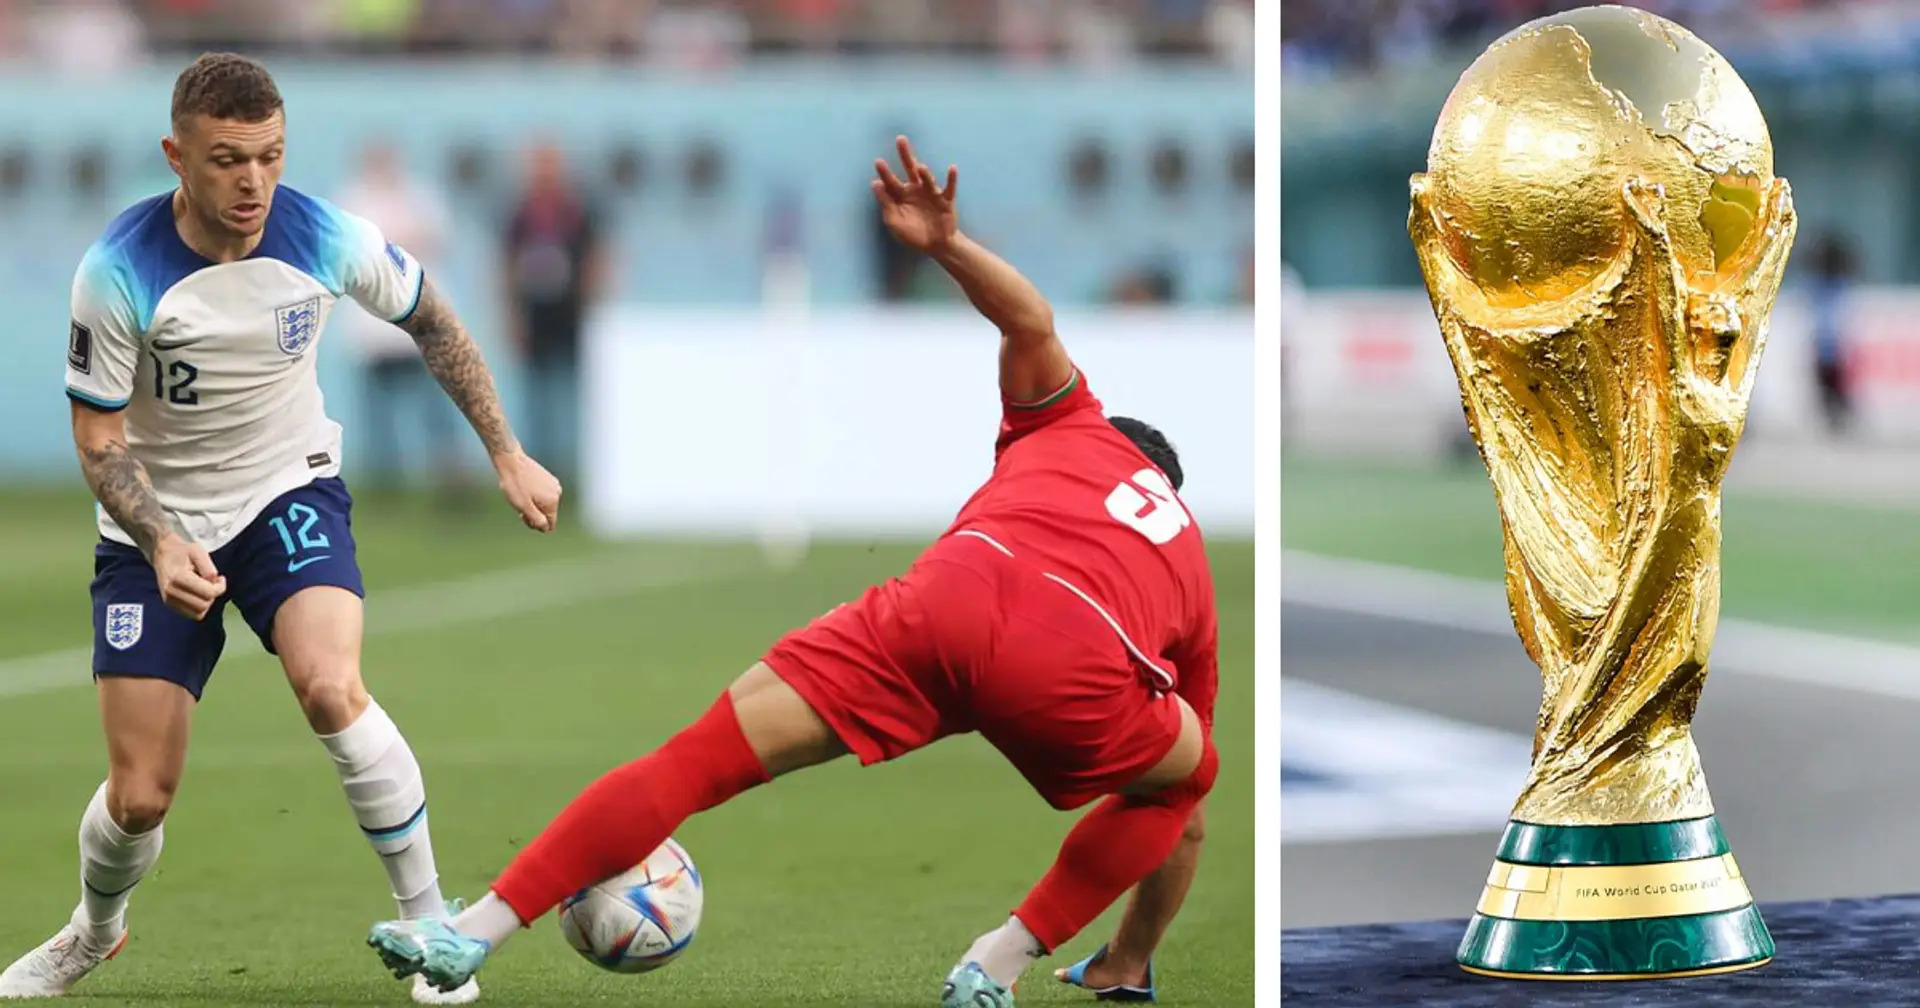 Inghilterra vs Iran: le formazioni delle squadre per la partita della Coppa del Mondo Qatar 2022 